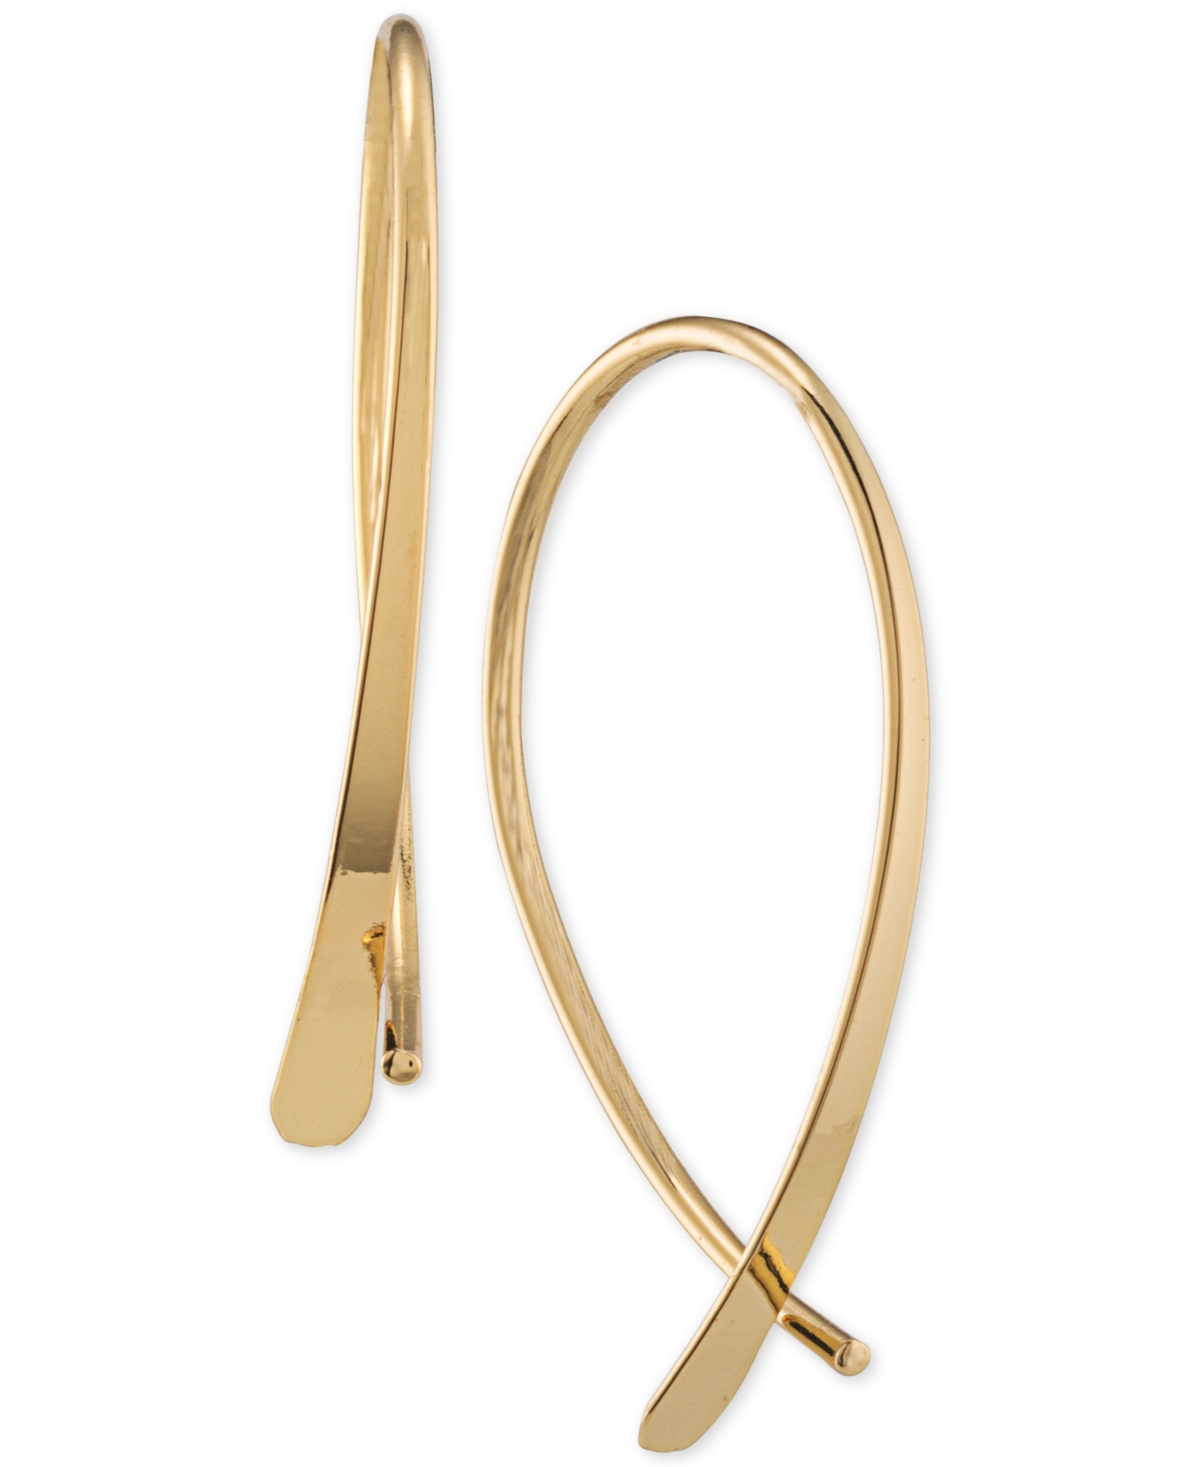 Lauren Ralph Lauren Sculptural Threader Small Hoop Earrings, 1" In Gold